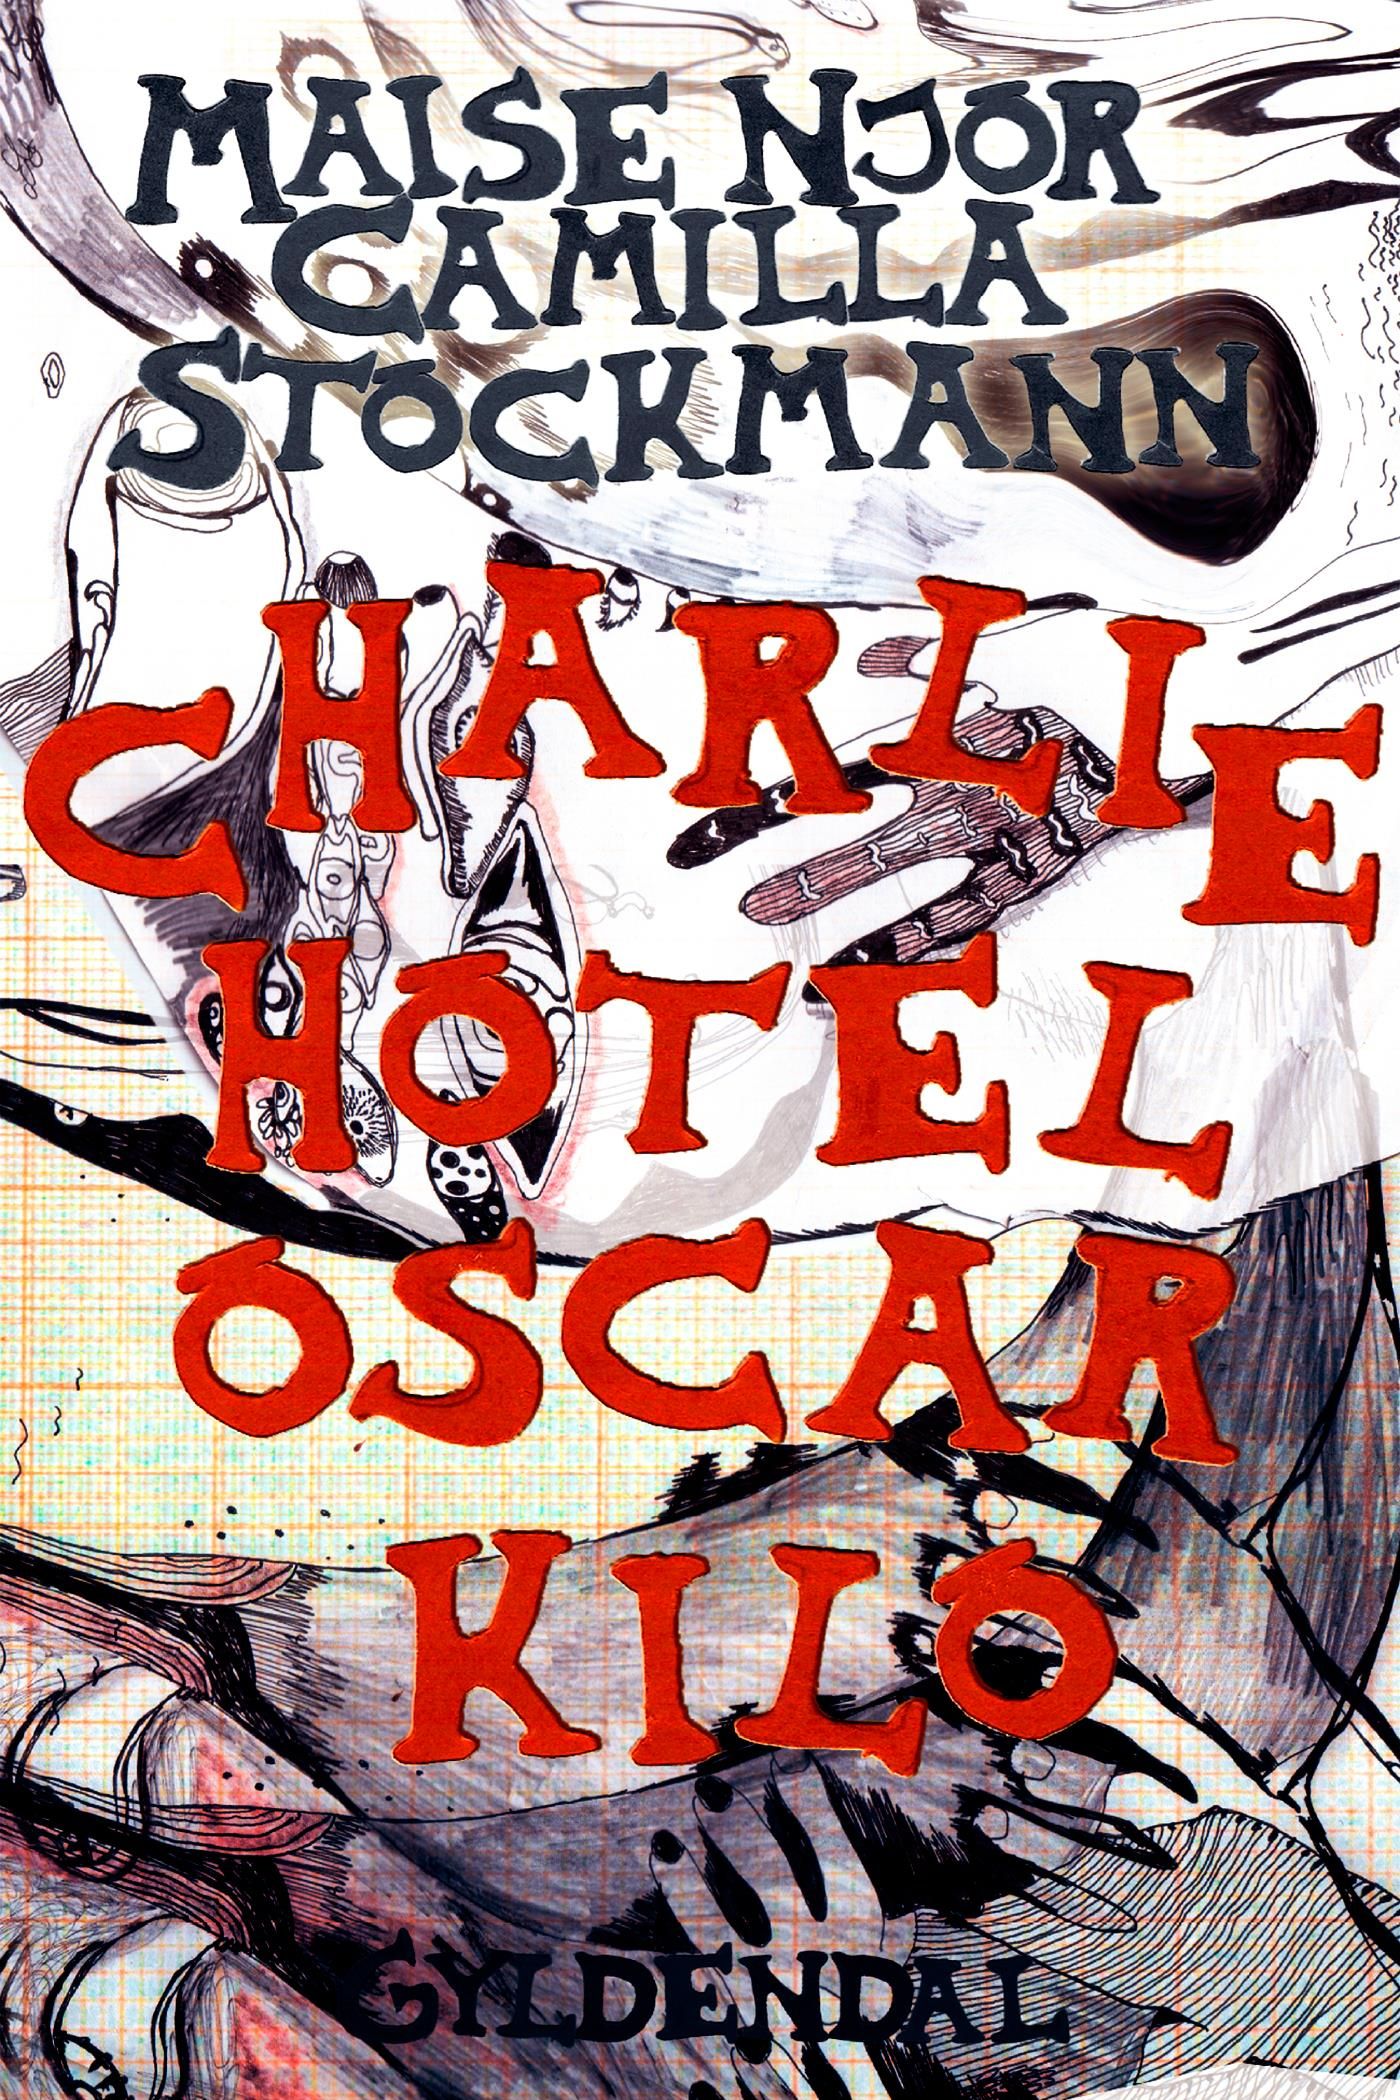 Charlie Hotel Oscar Kilo, eBook by Maise Njor, Camilla Stockmann